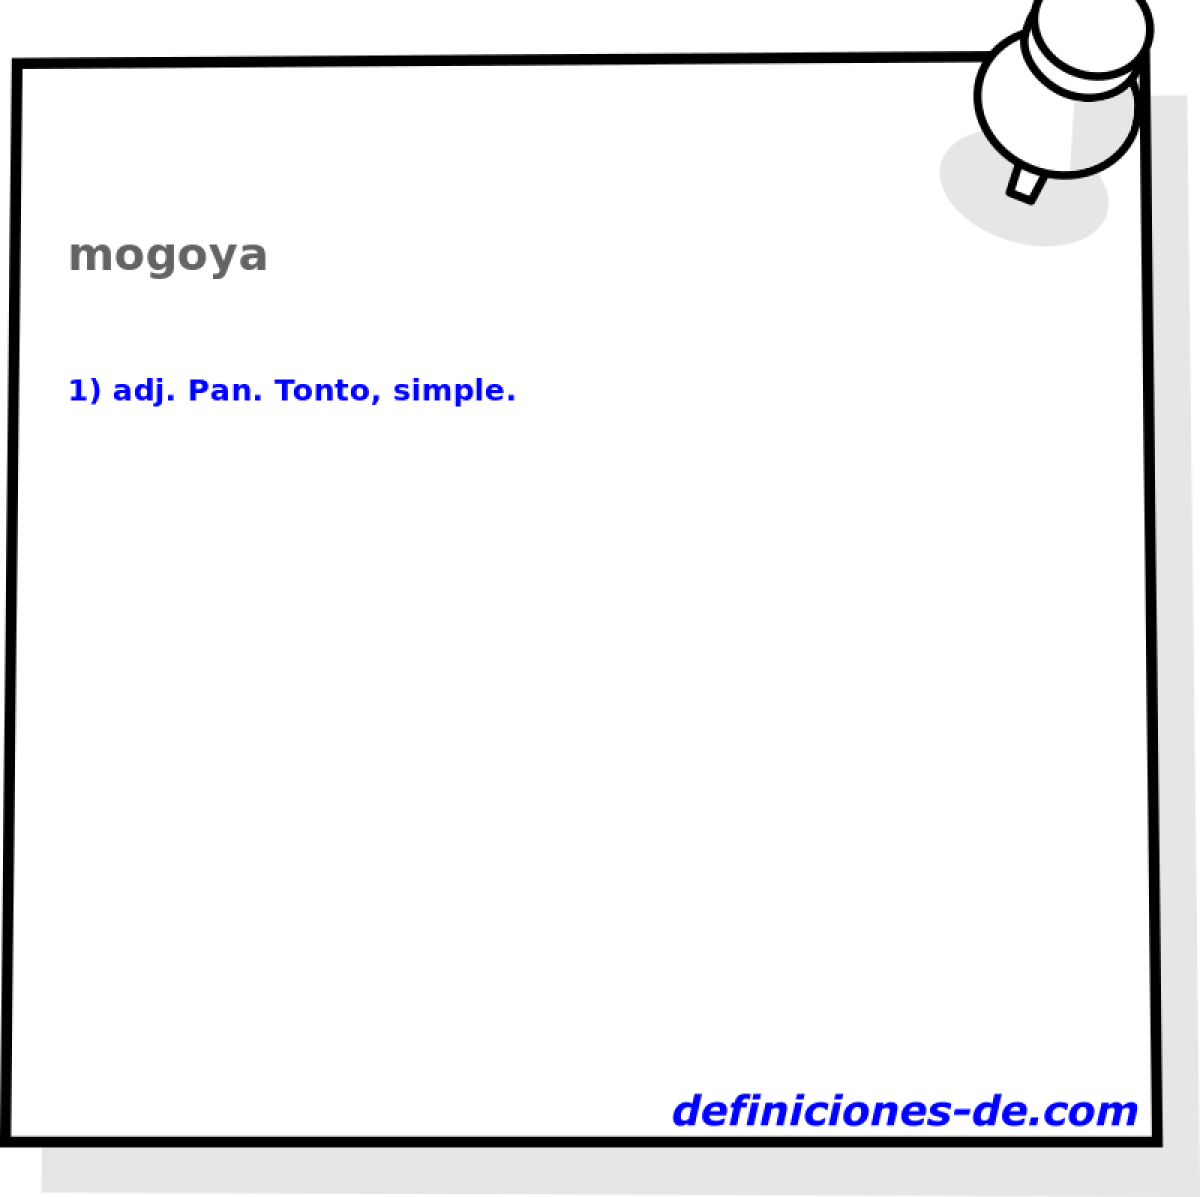 mogoya 